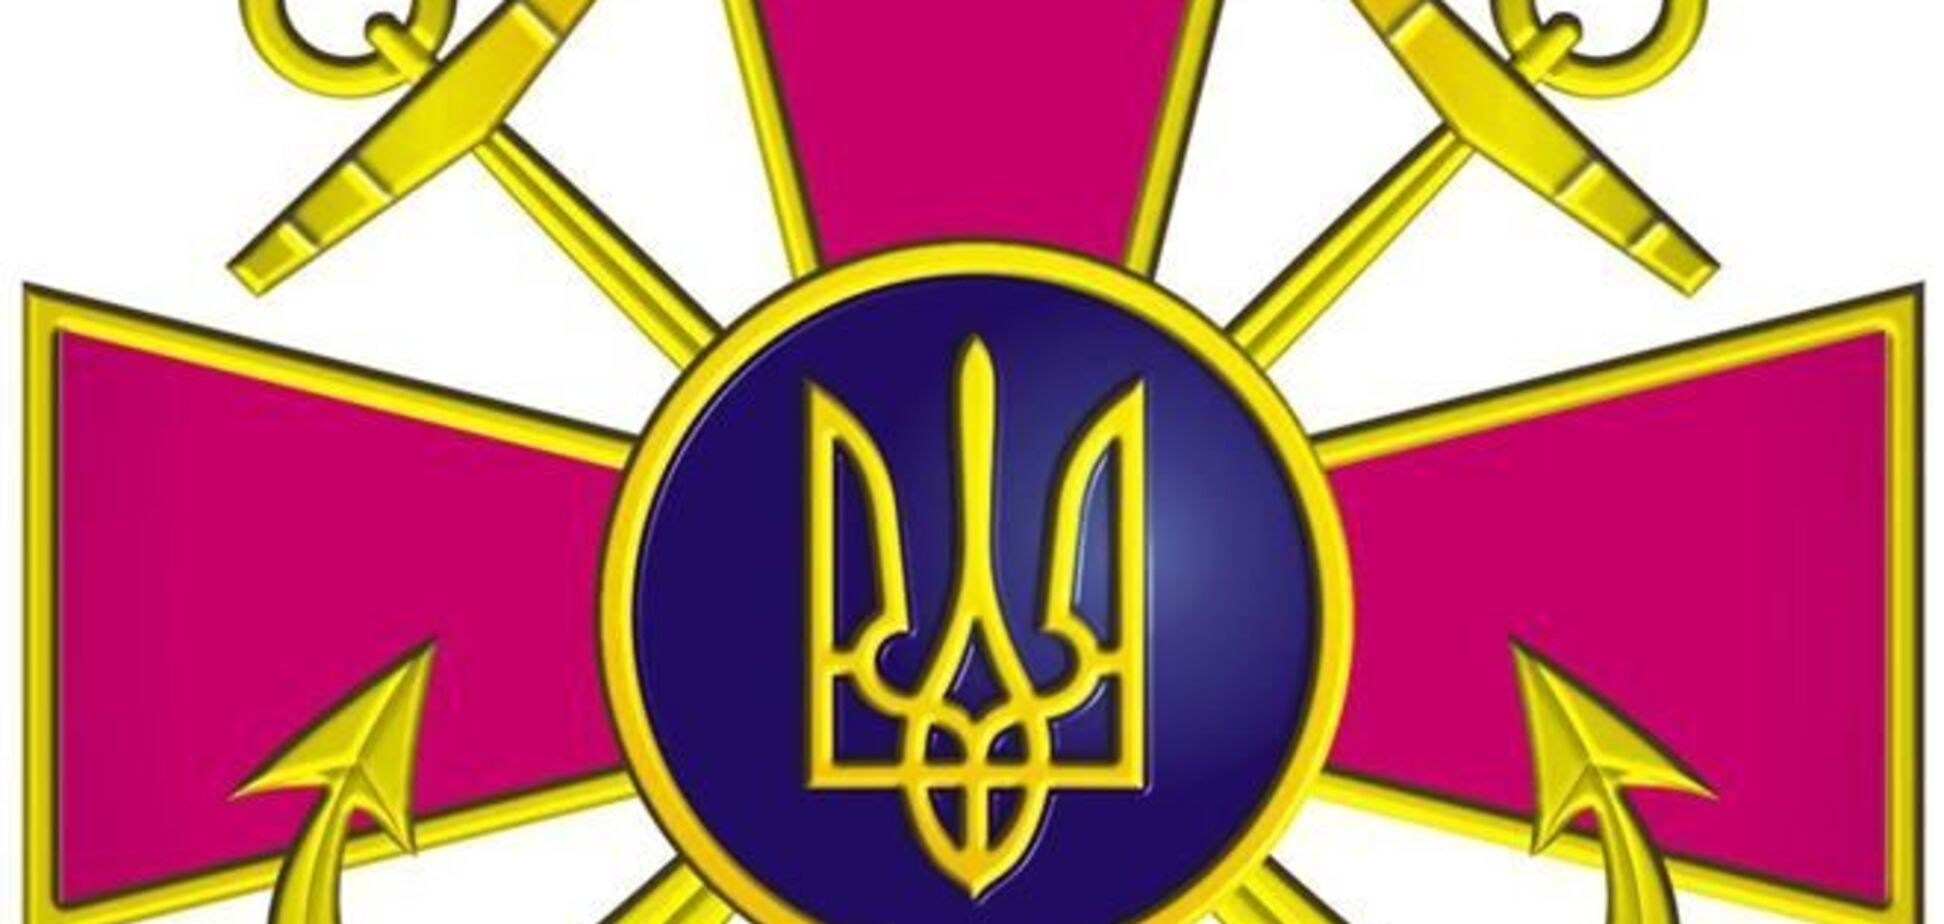 Військова рада ВМС ЗС України закликав вирішити ситуацію в Криму мирним шляхом